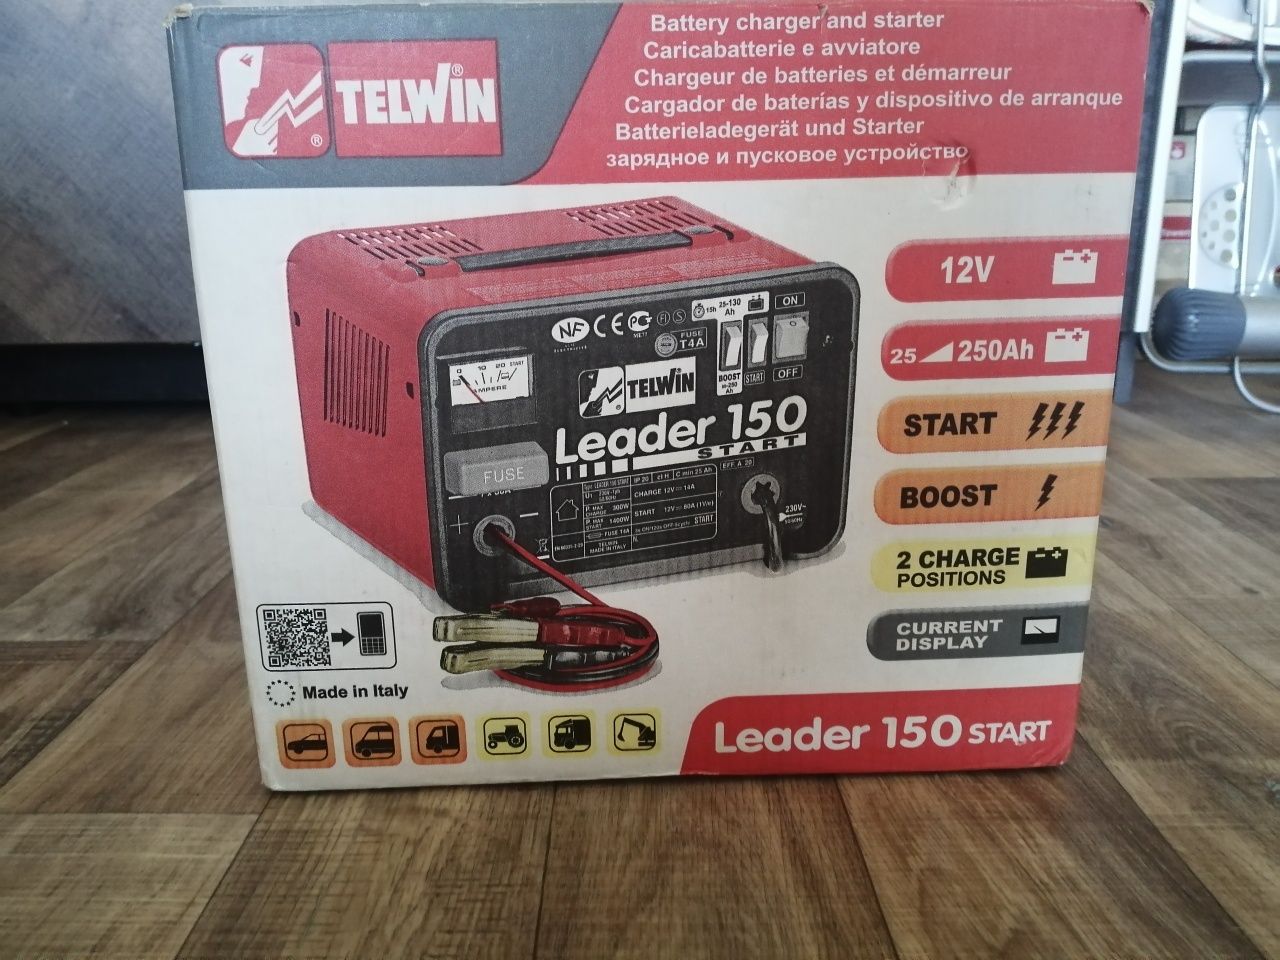 Зарядно стартерно устройство Telwin Leader 150 Start 12 V, 25 Ah – 250